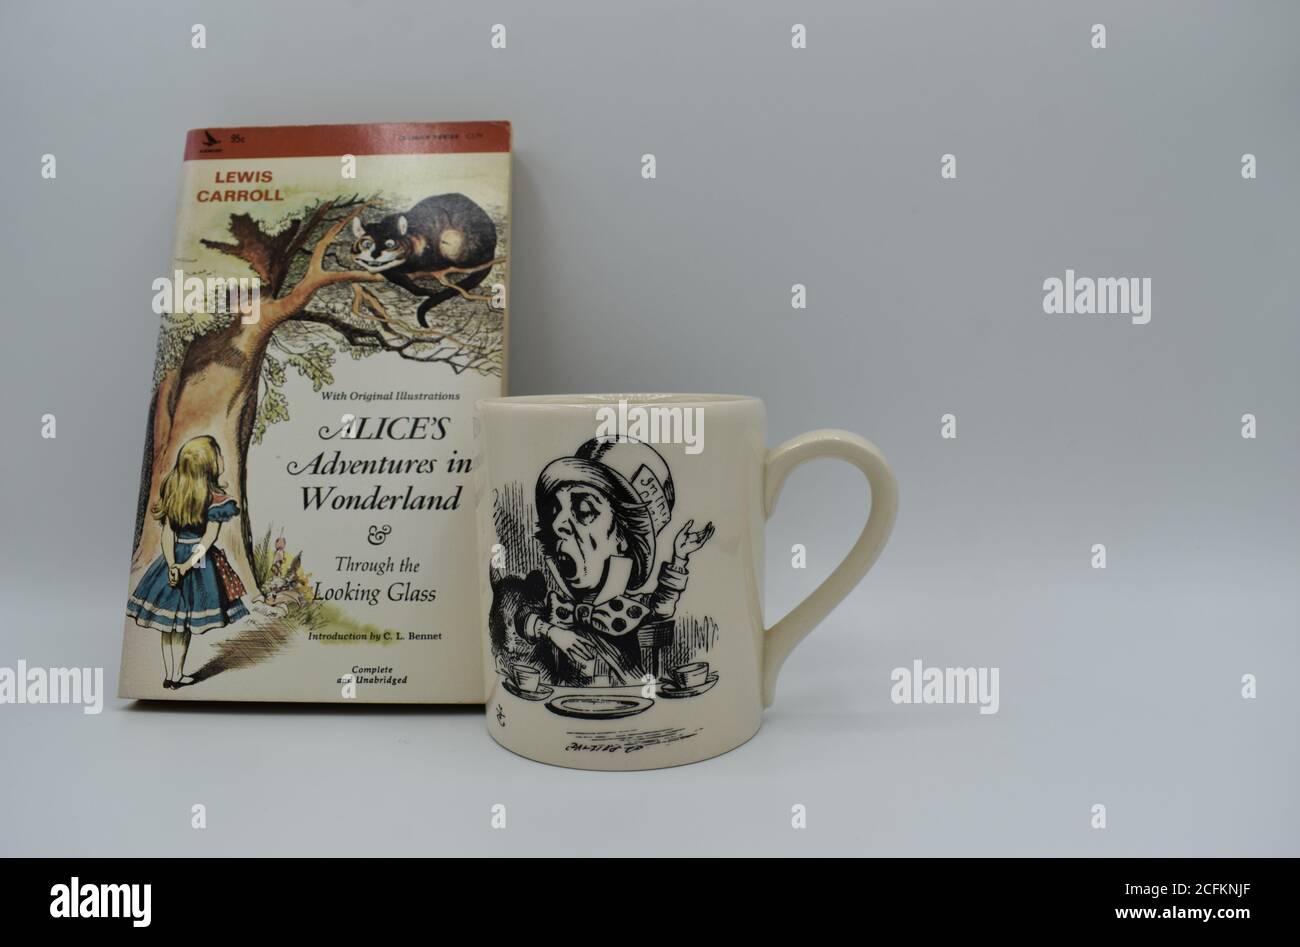 Libro e tazza di Alice in Wonderland, con spazio per la copia sul lato destro. Foto Stock